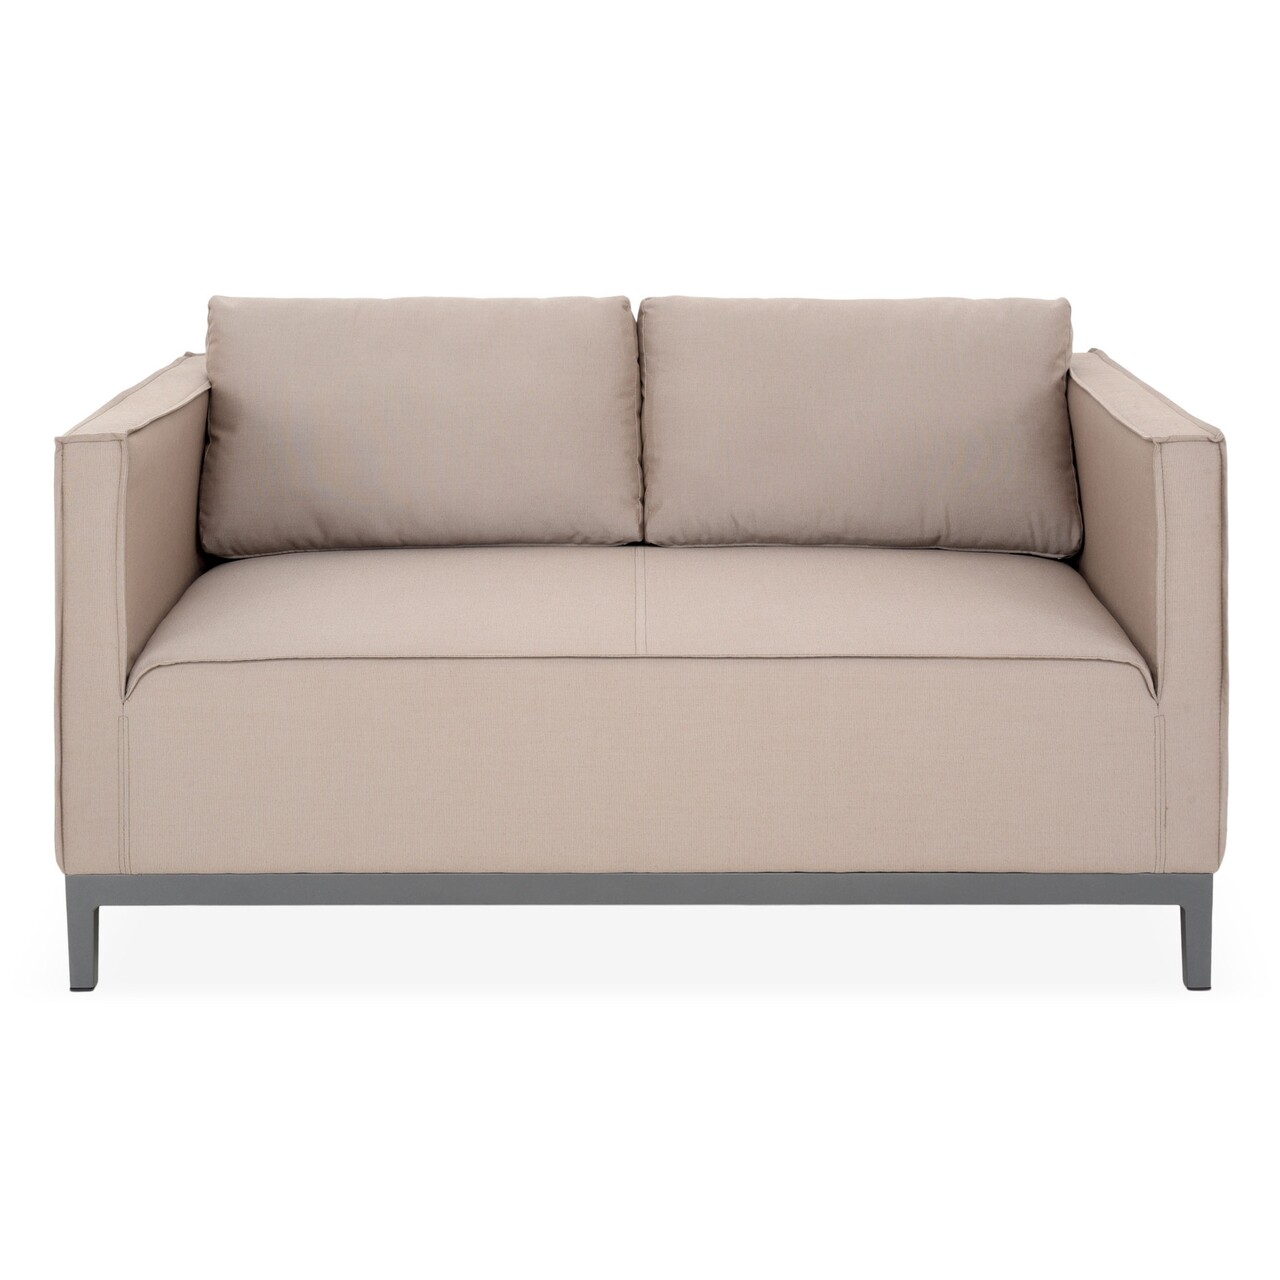 Maison eon kétszemélyes kanapé, l.140 l.85 h.67 cm, alumínium, szürke